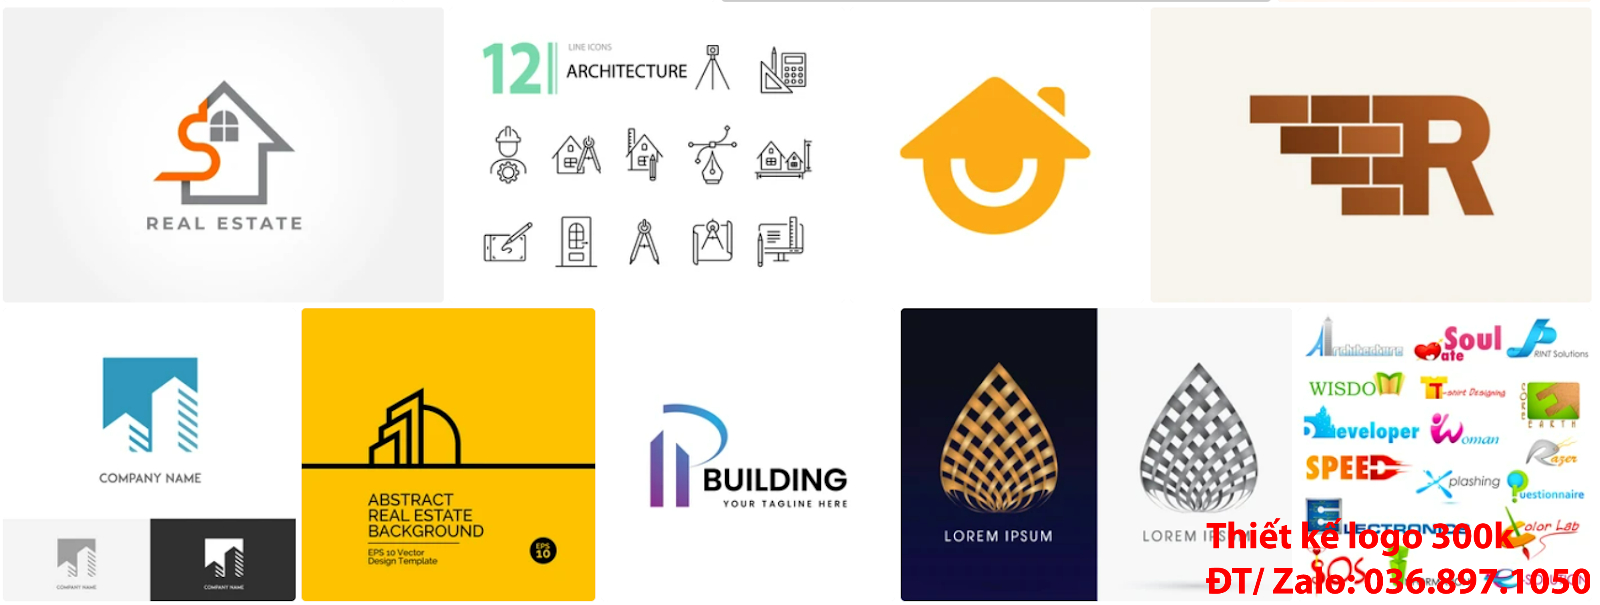 Tạo mẫu thiết kế logo công ty kiến trúc đẹp nhất hiện nay chất lượng tại thành phố Hồ Chí Minh